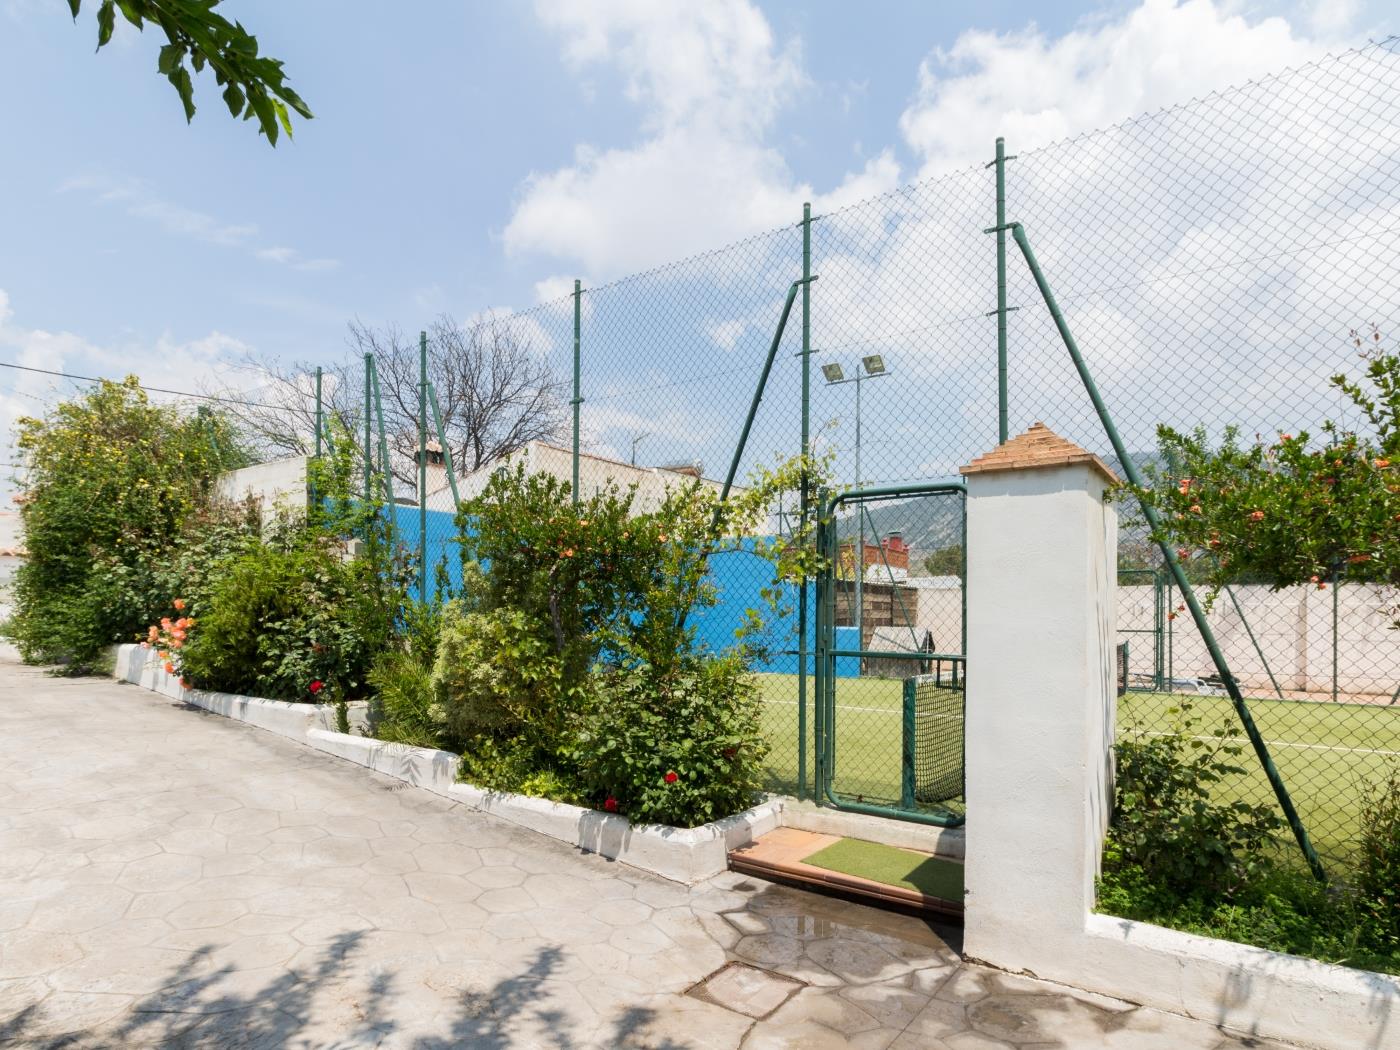 Alojamiento con piscina y pista de pádel en Padul